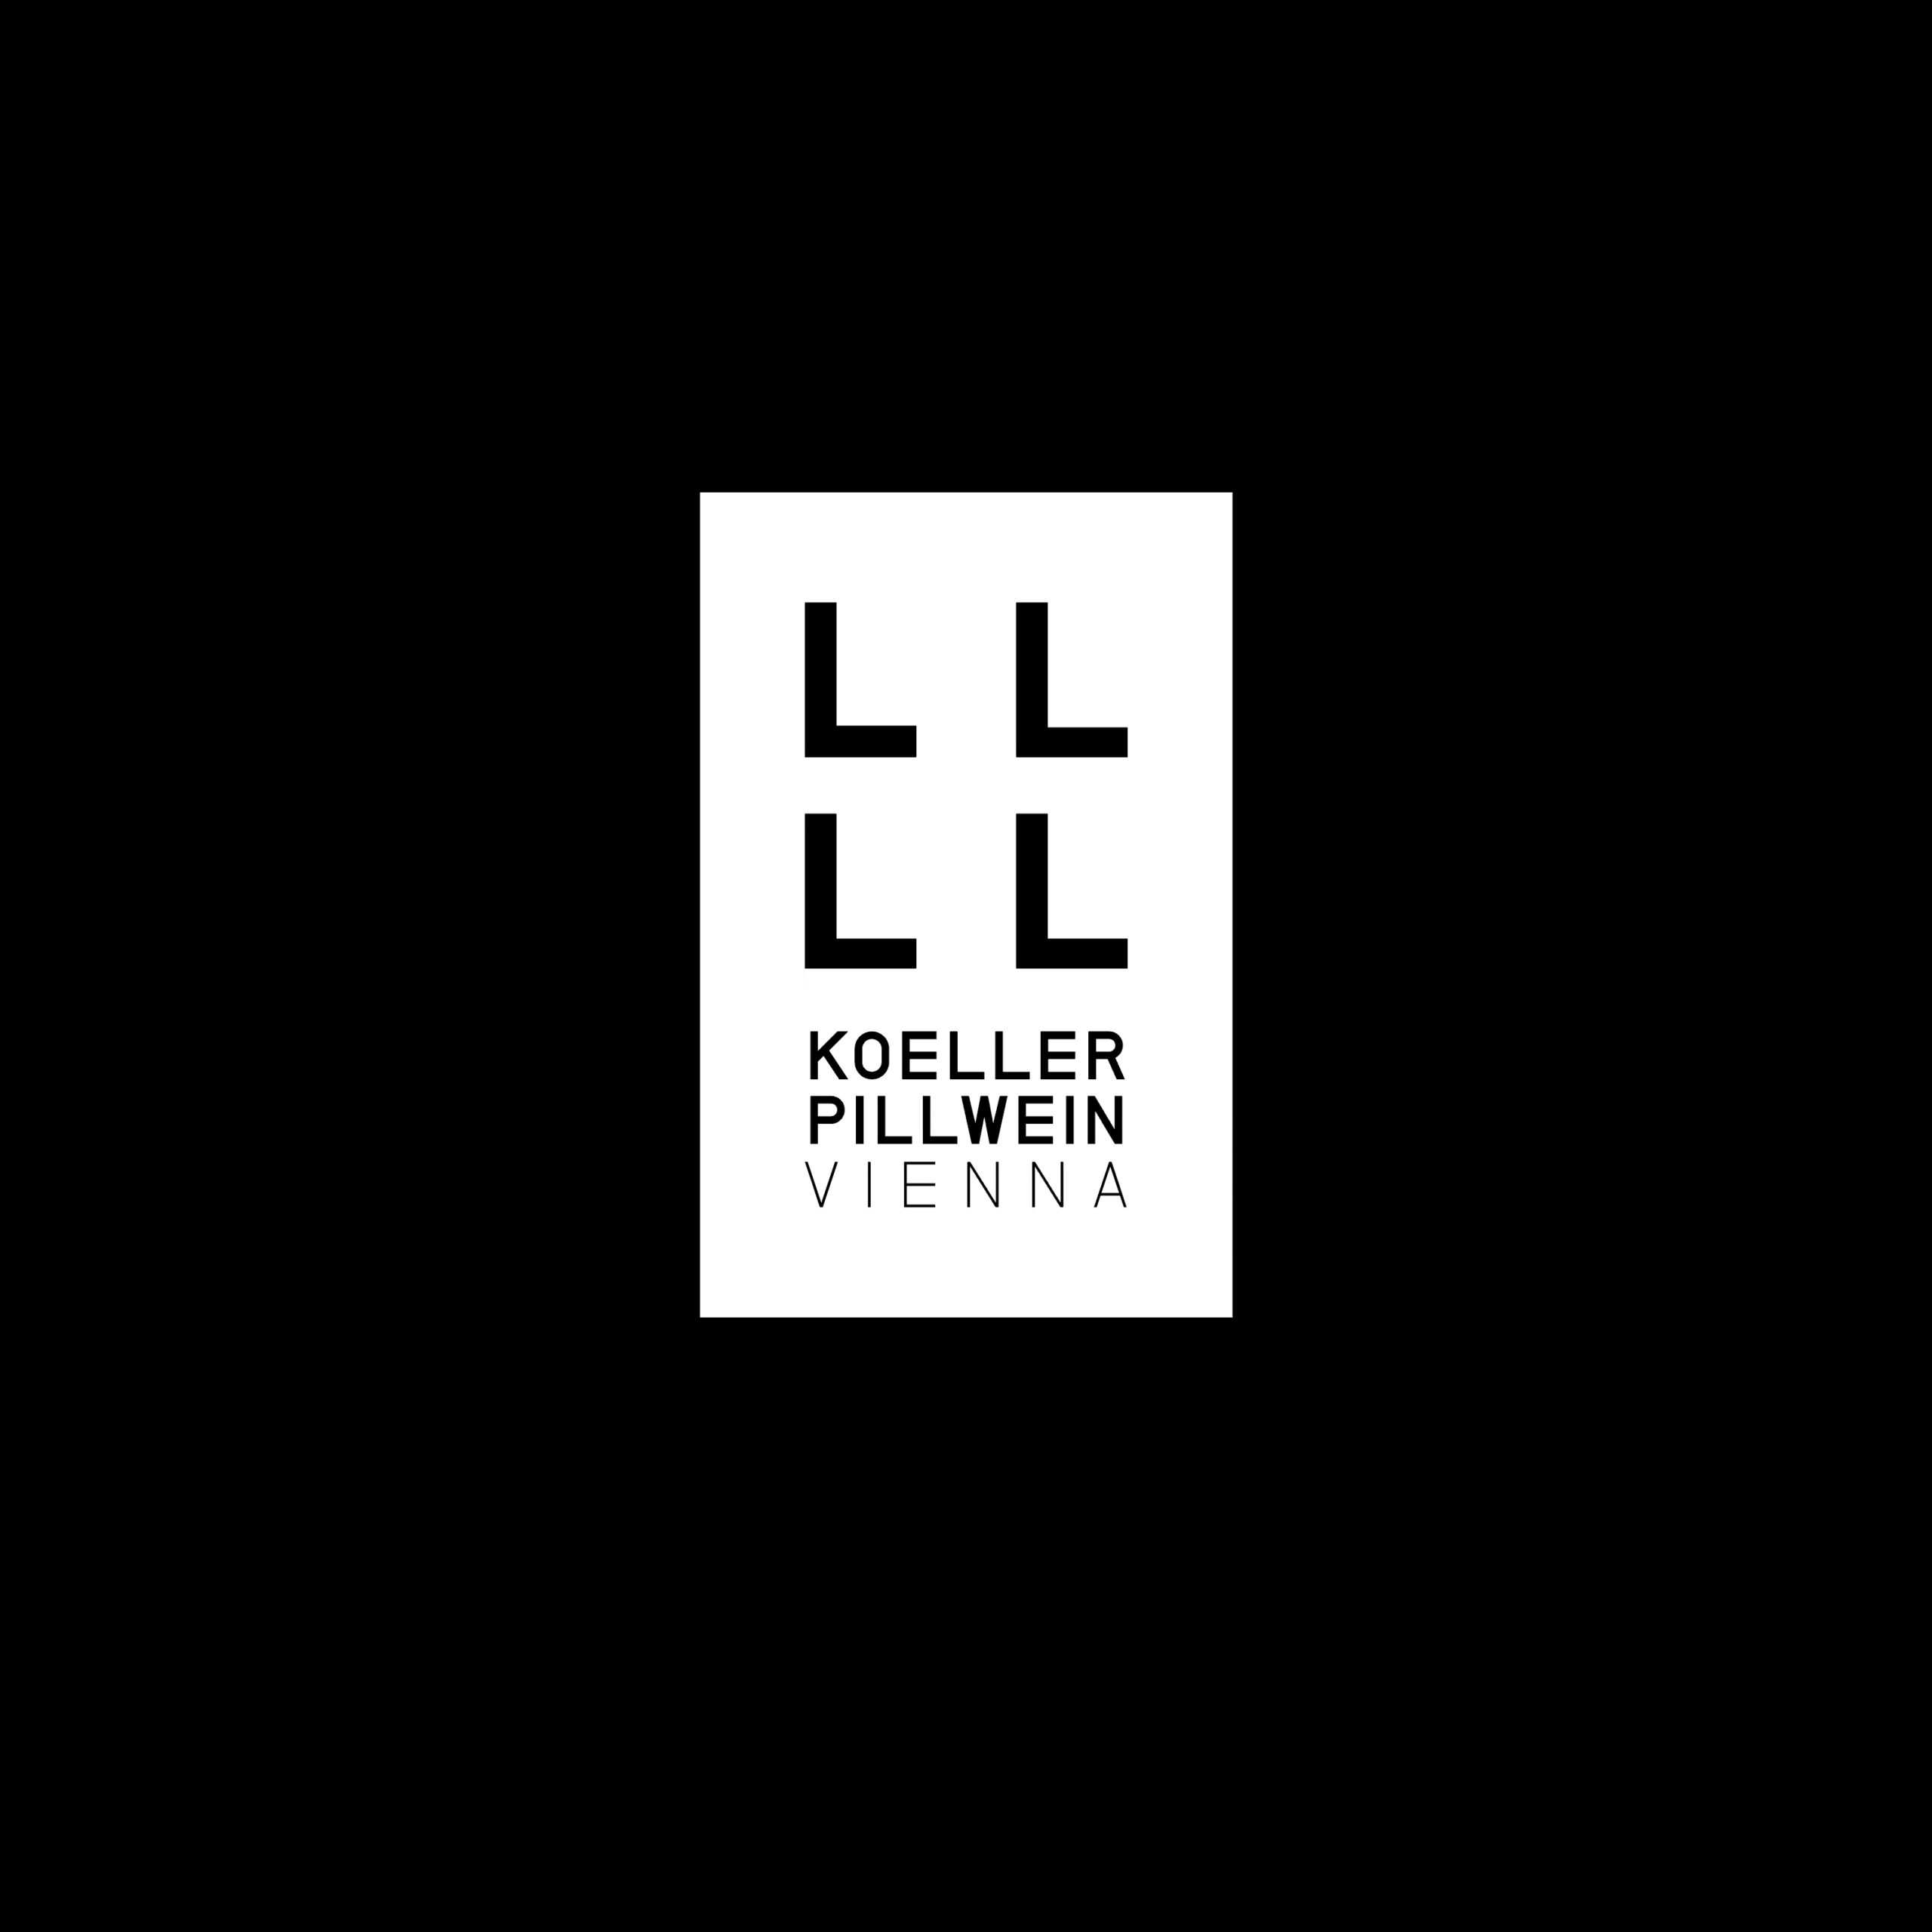 Logo → Koeller Pillwein Vienna, 2021